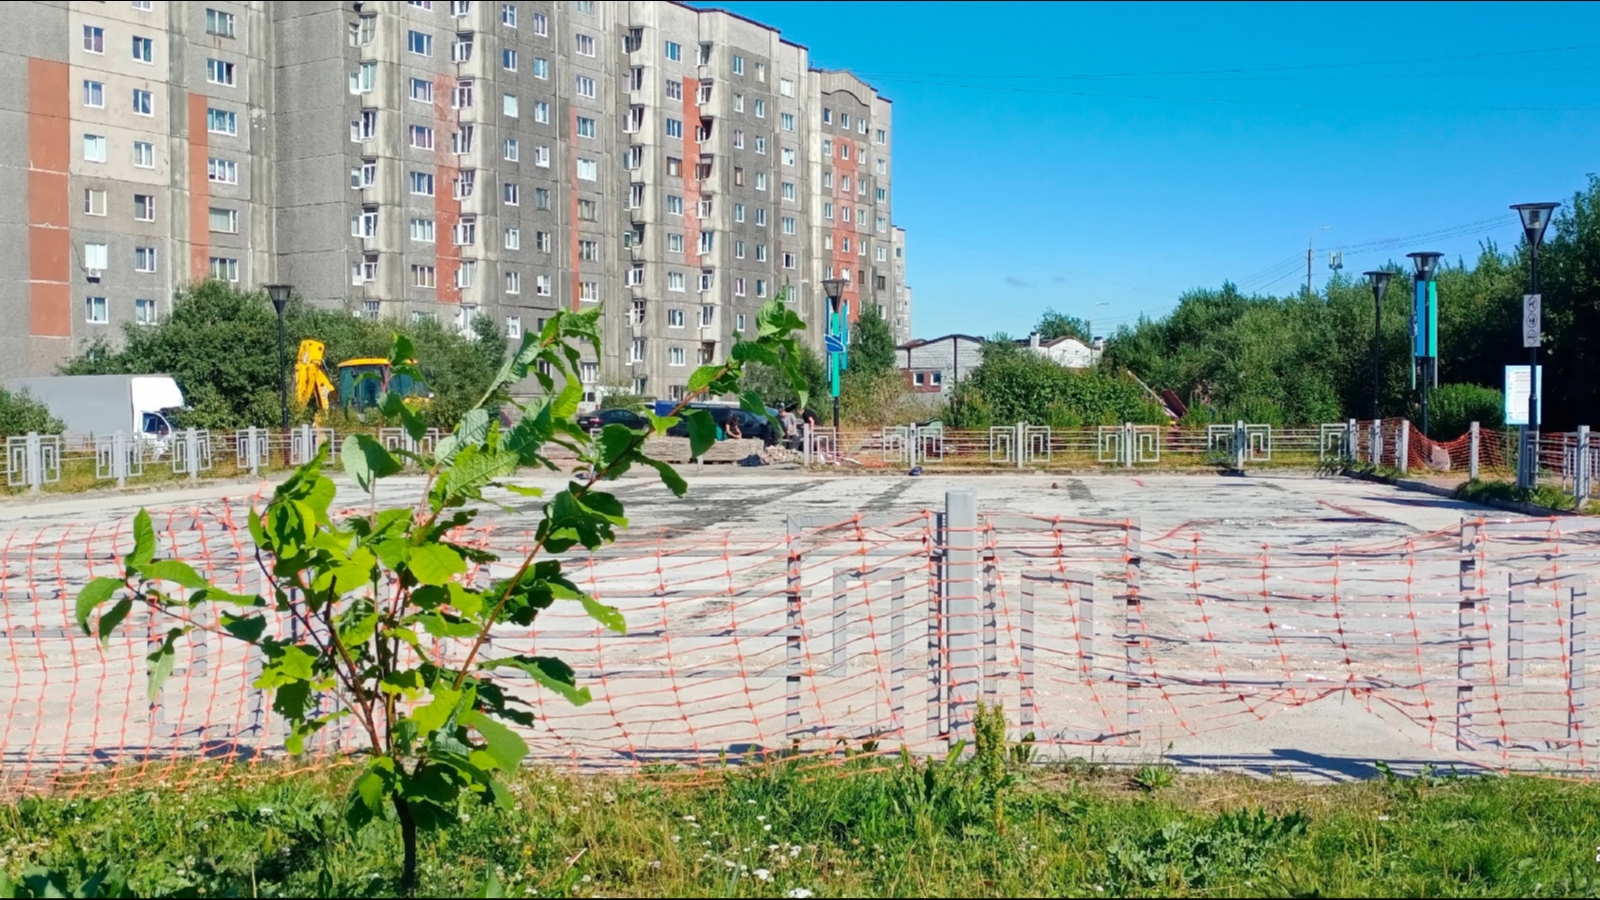 Детская площадка у Ждущей  в Мурманске в срок не сдана